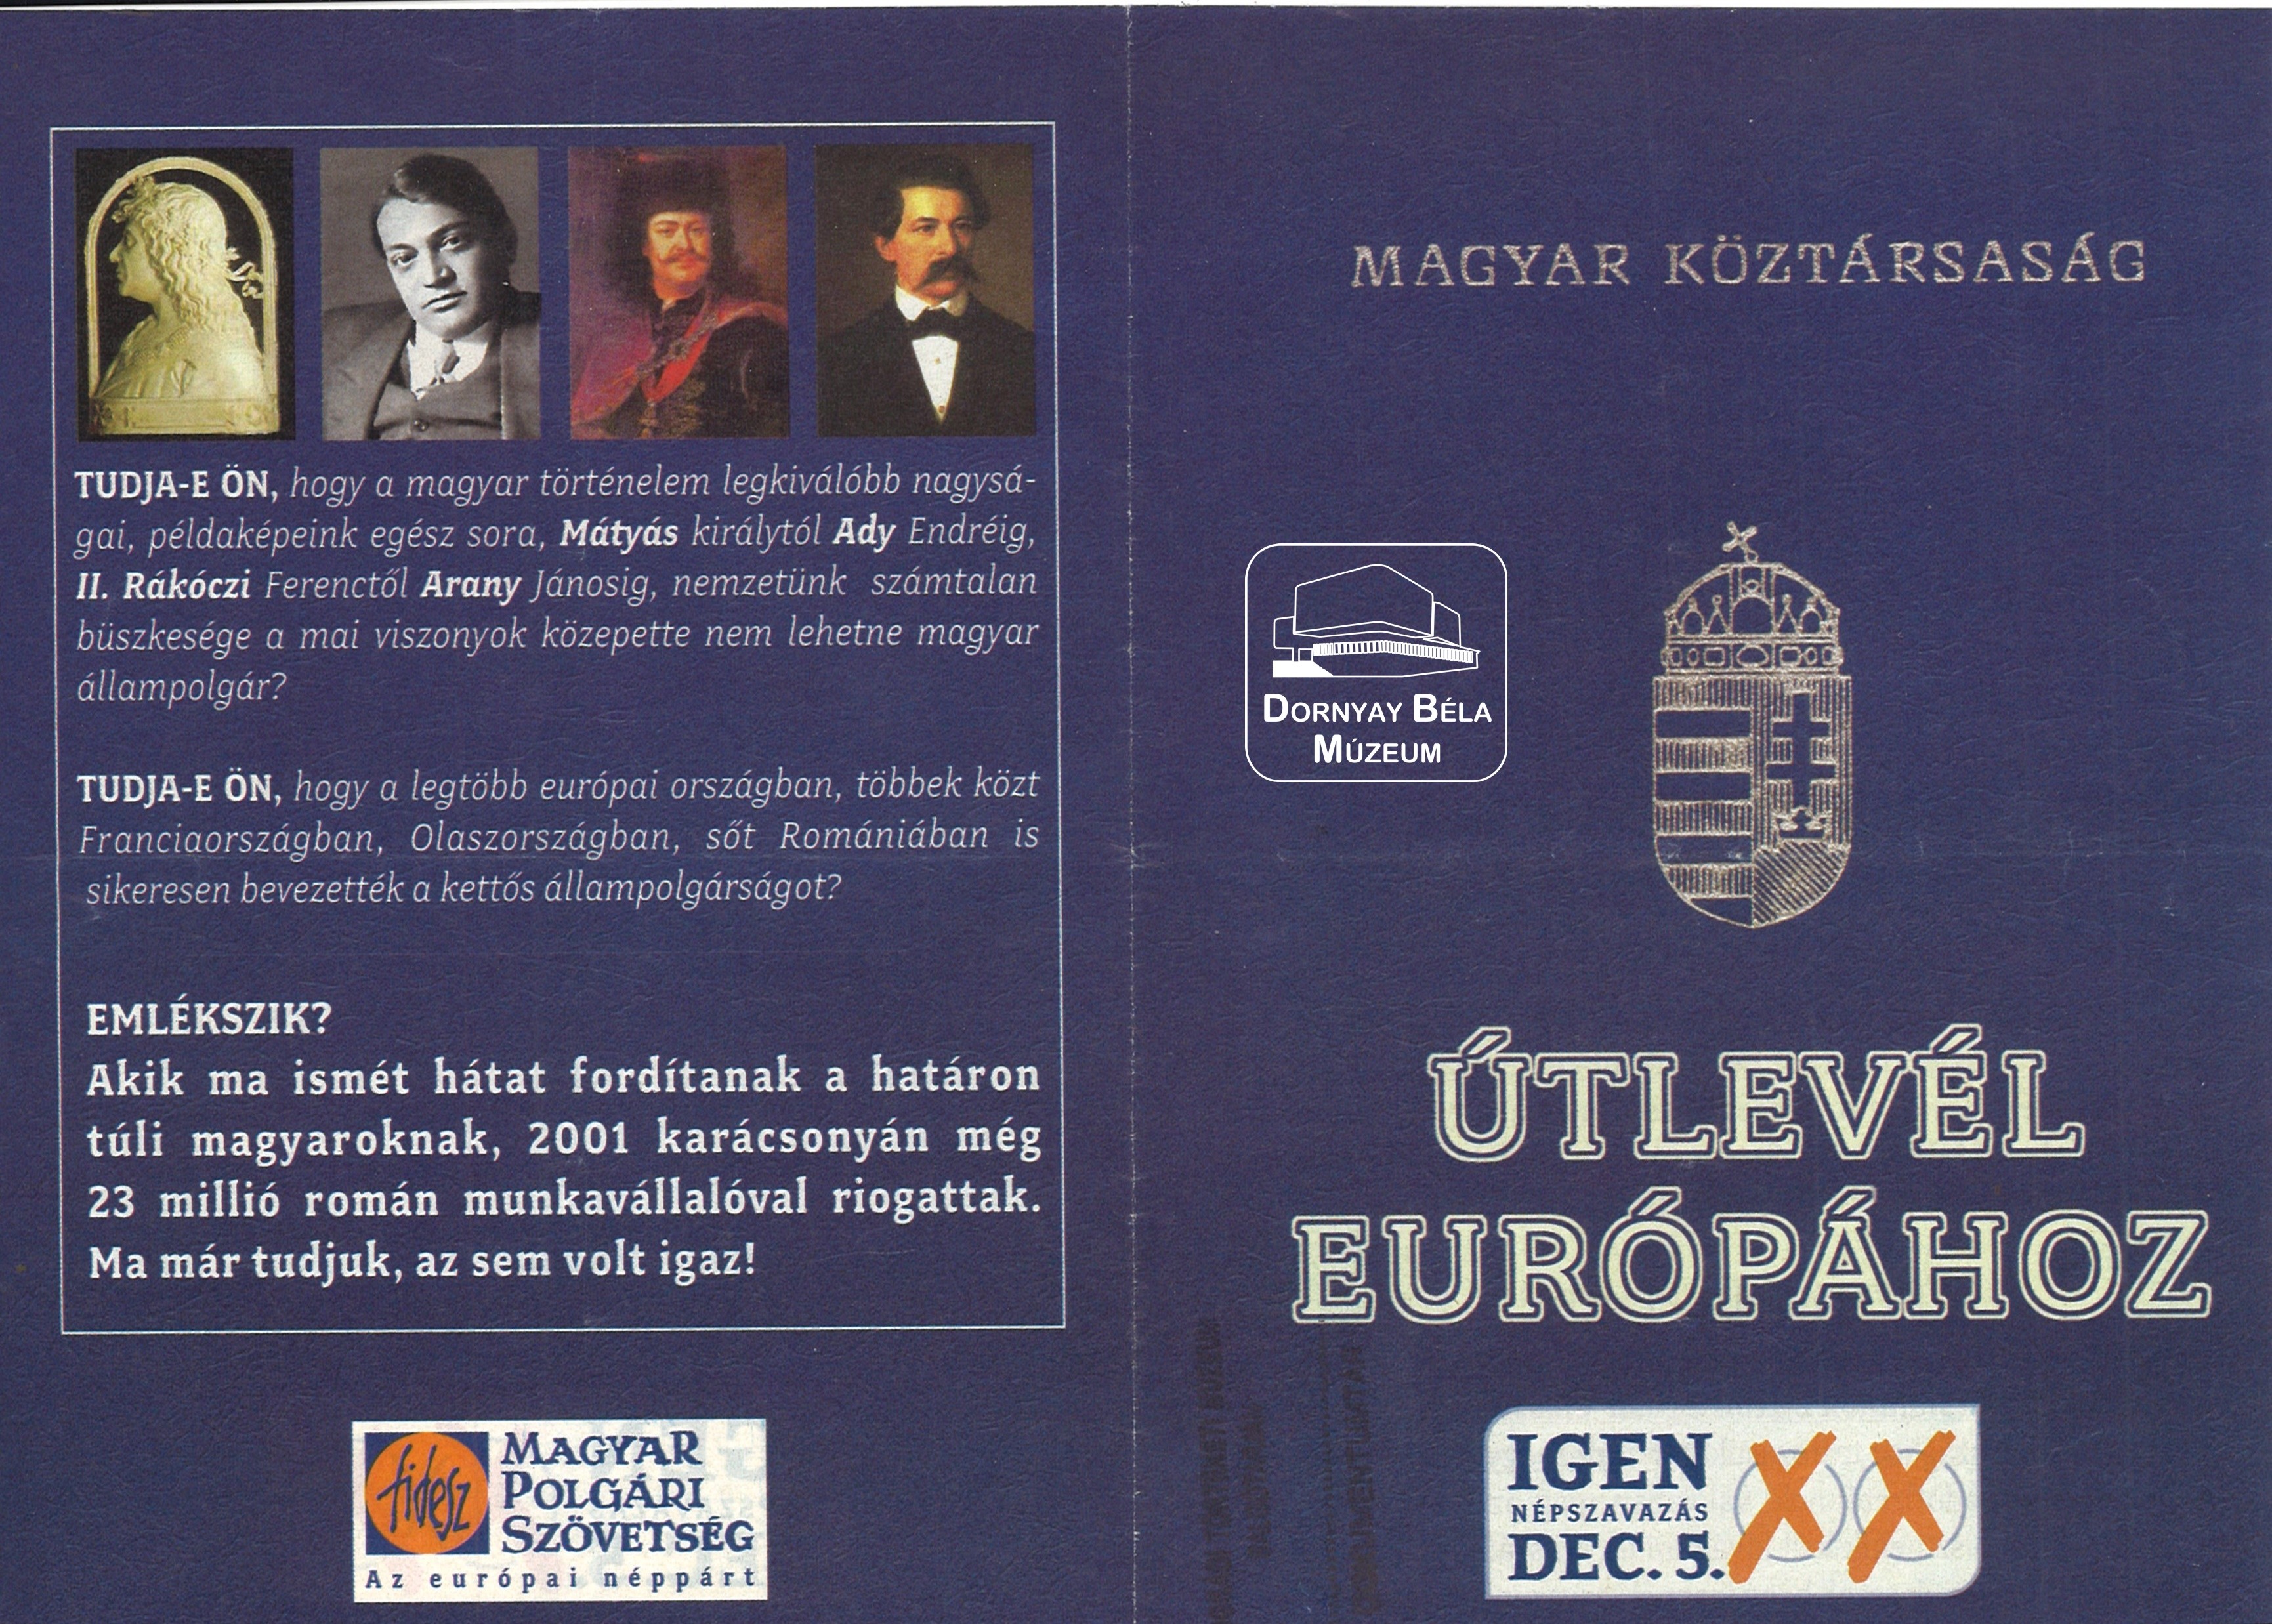 Útlevél Európához, 2004. december 5-i népszavazás (Dornyay Béla Múzeum, Salgótarján CC BY-NC-SA)